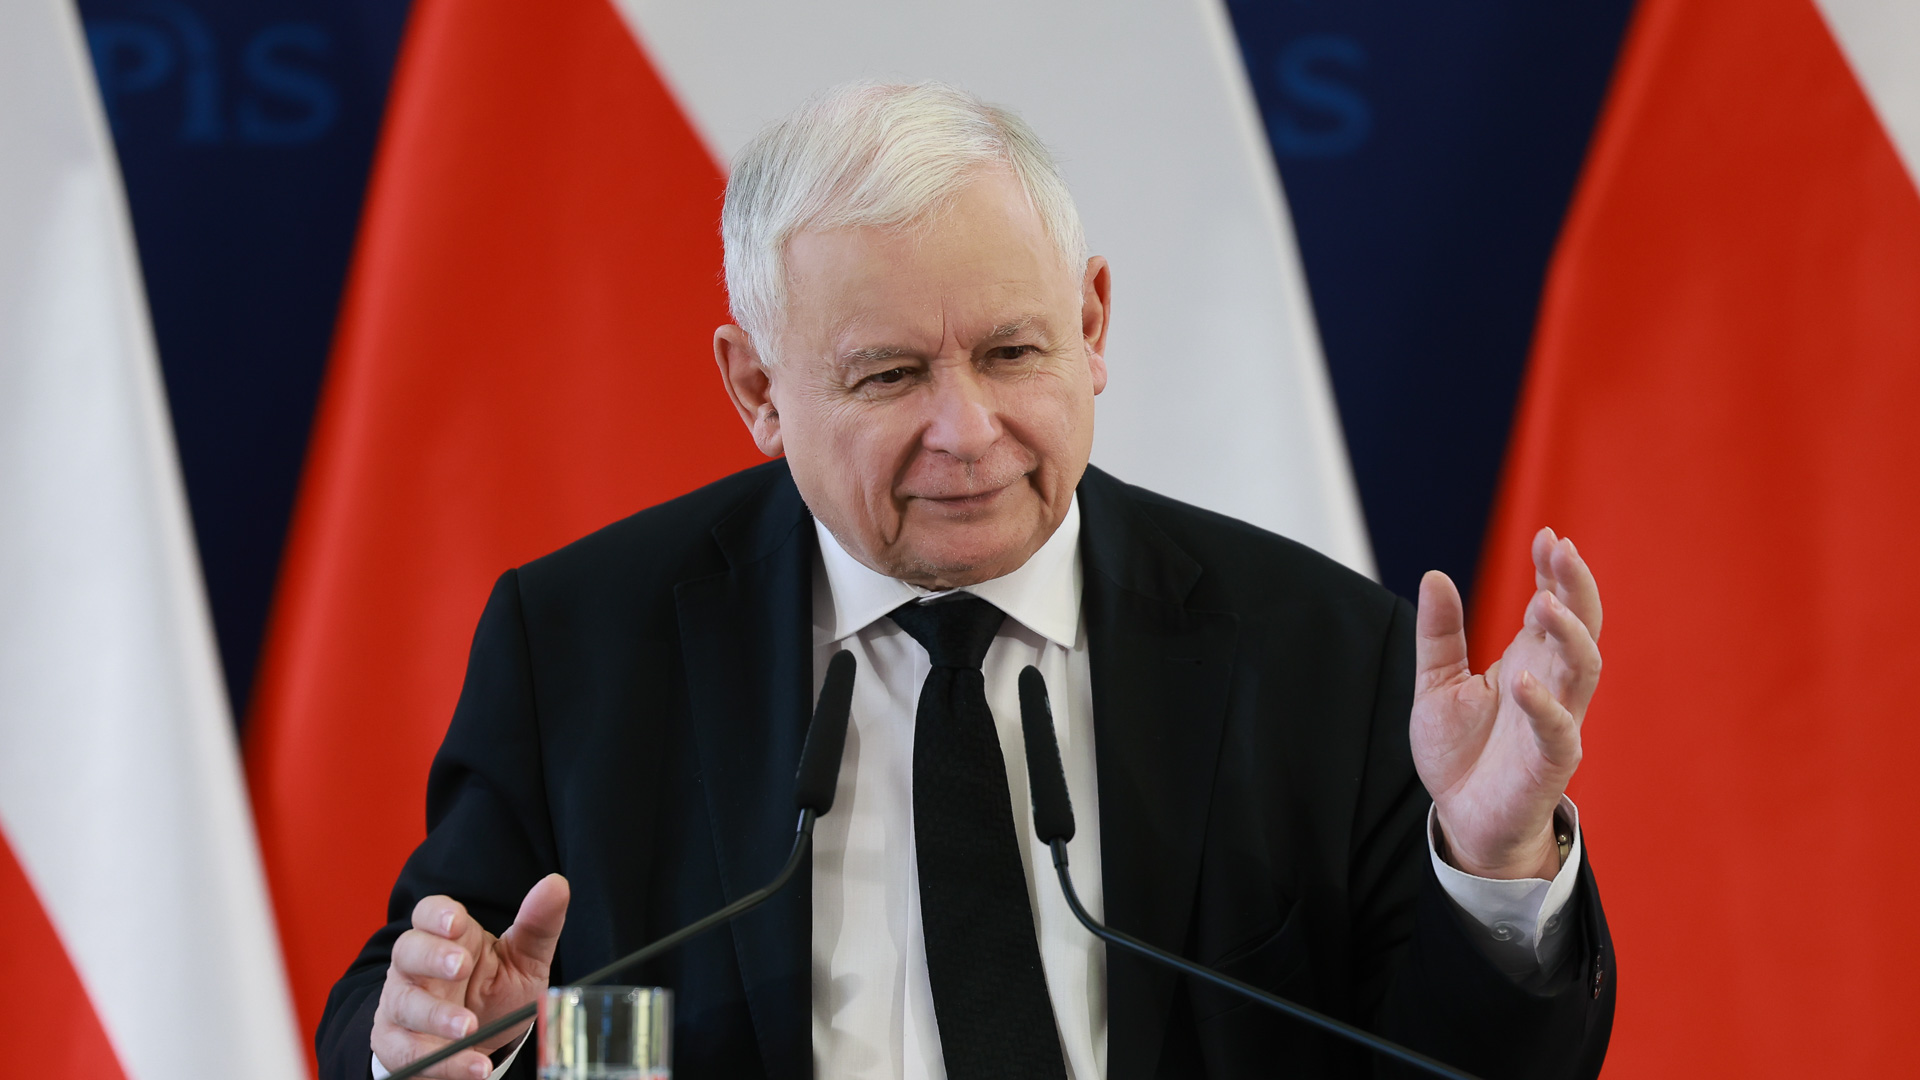 Prezes Prawa i Sprawiedliwości Jarosław Kaczyński zapowiedział przedstawienie projektu ustawy dotyczący powołania Komisji, która zbadałaby politykę energetyczną prowadzoną przez polski rząd w latach 2007-2022.